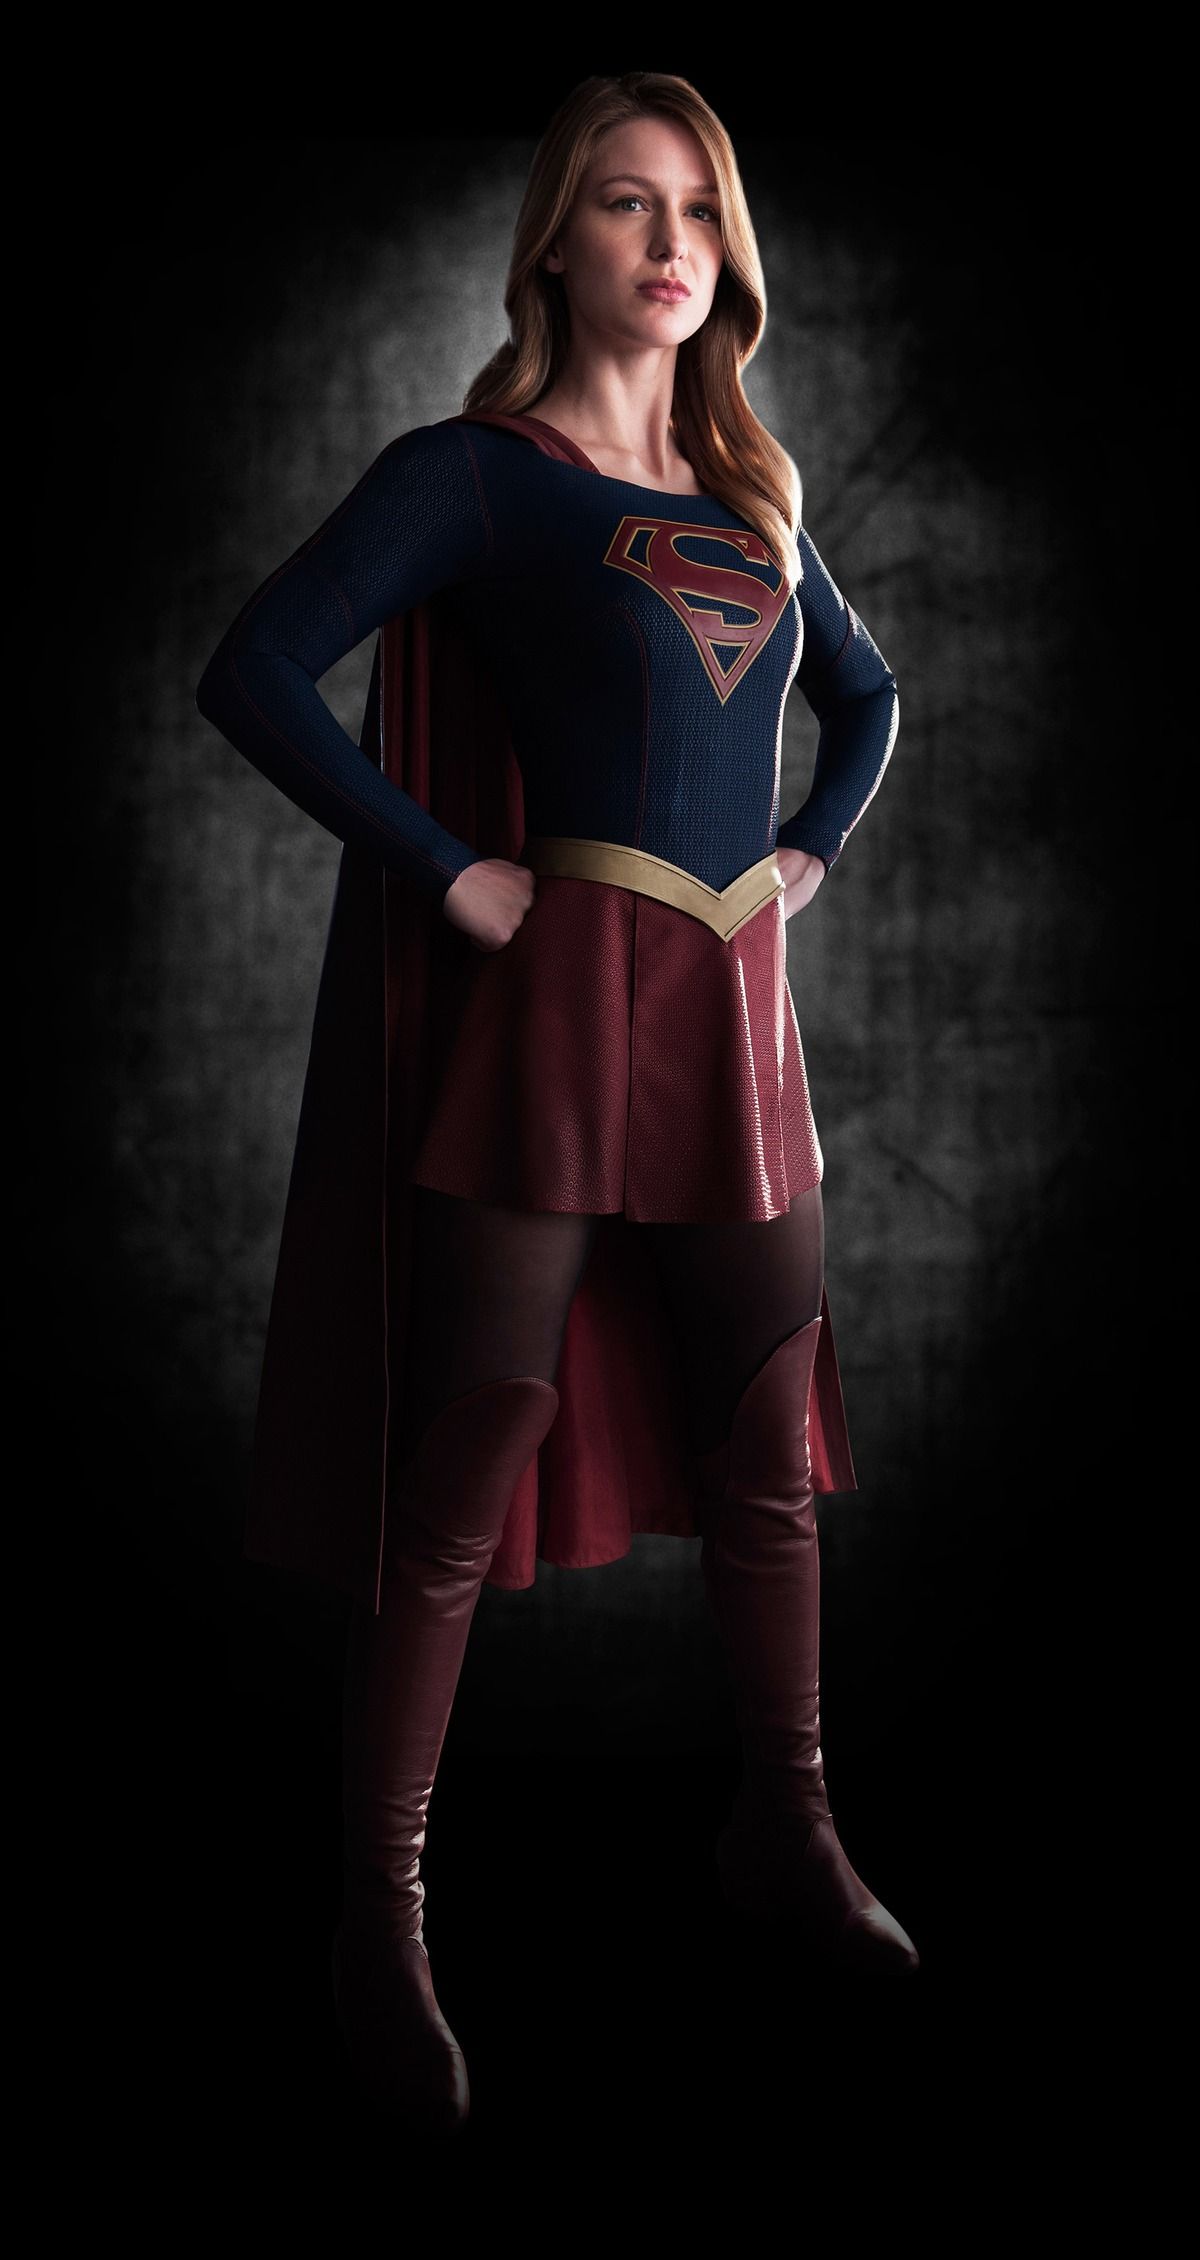 #Supergirl